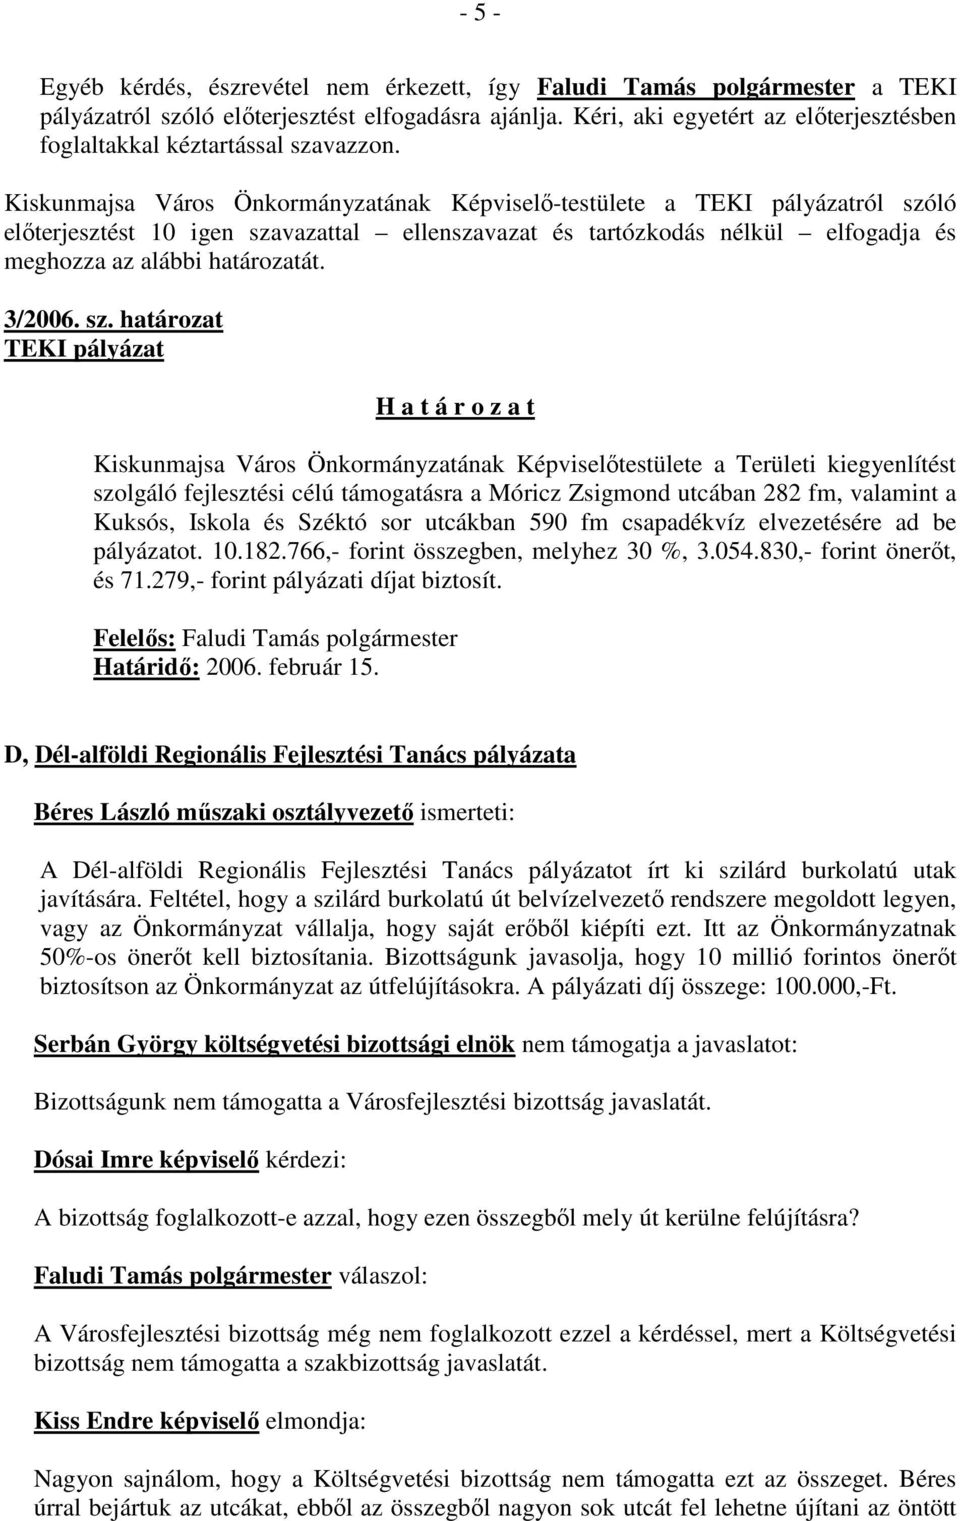 Kiskunmajsa Város Önkormányzatának Képviselő-testülete a TEKI pályázatról szóló előterjesztést 10 igen szavazattal ellenszavazat és tartózkodás nélkül elfogadja és meghozza az alábbi határozatát.